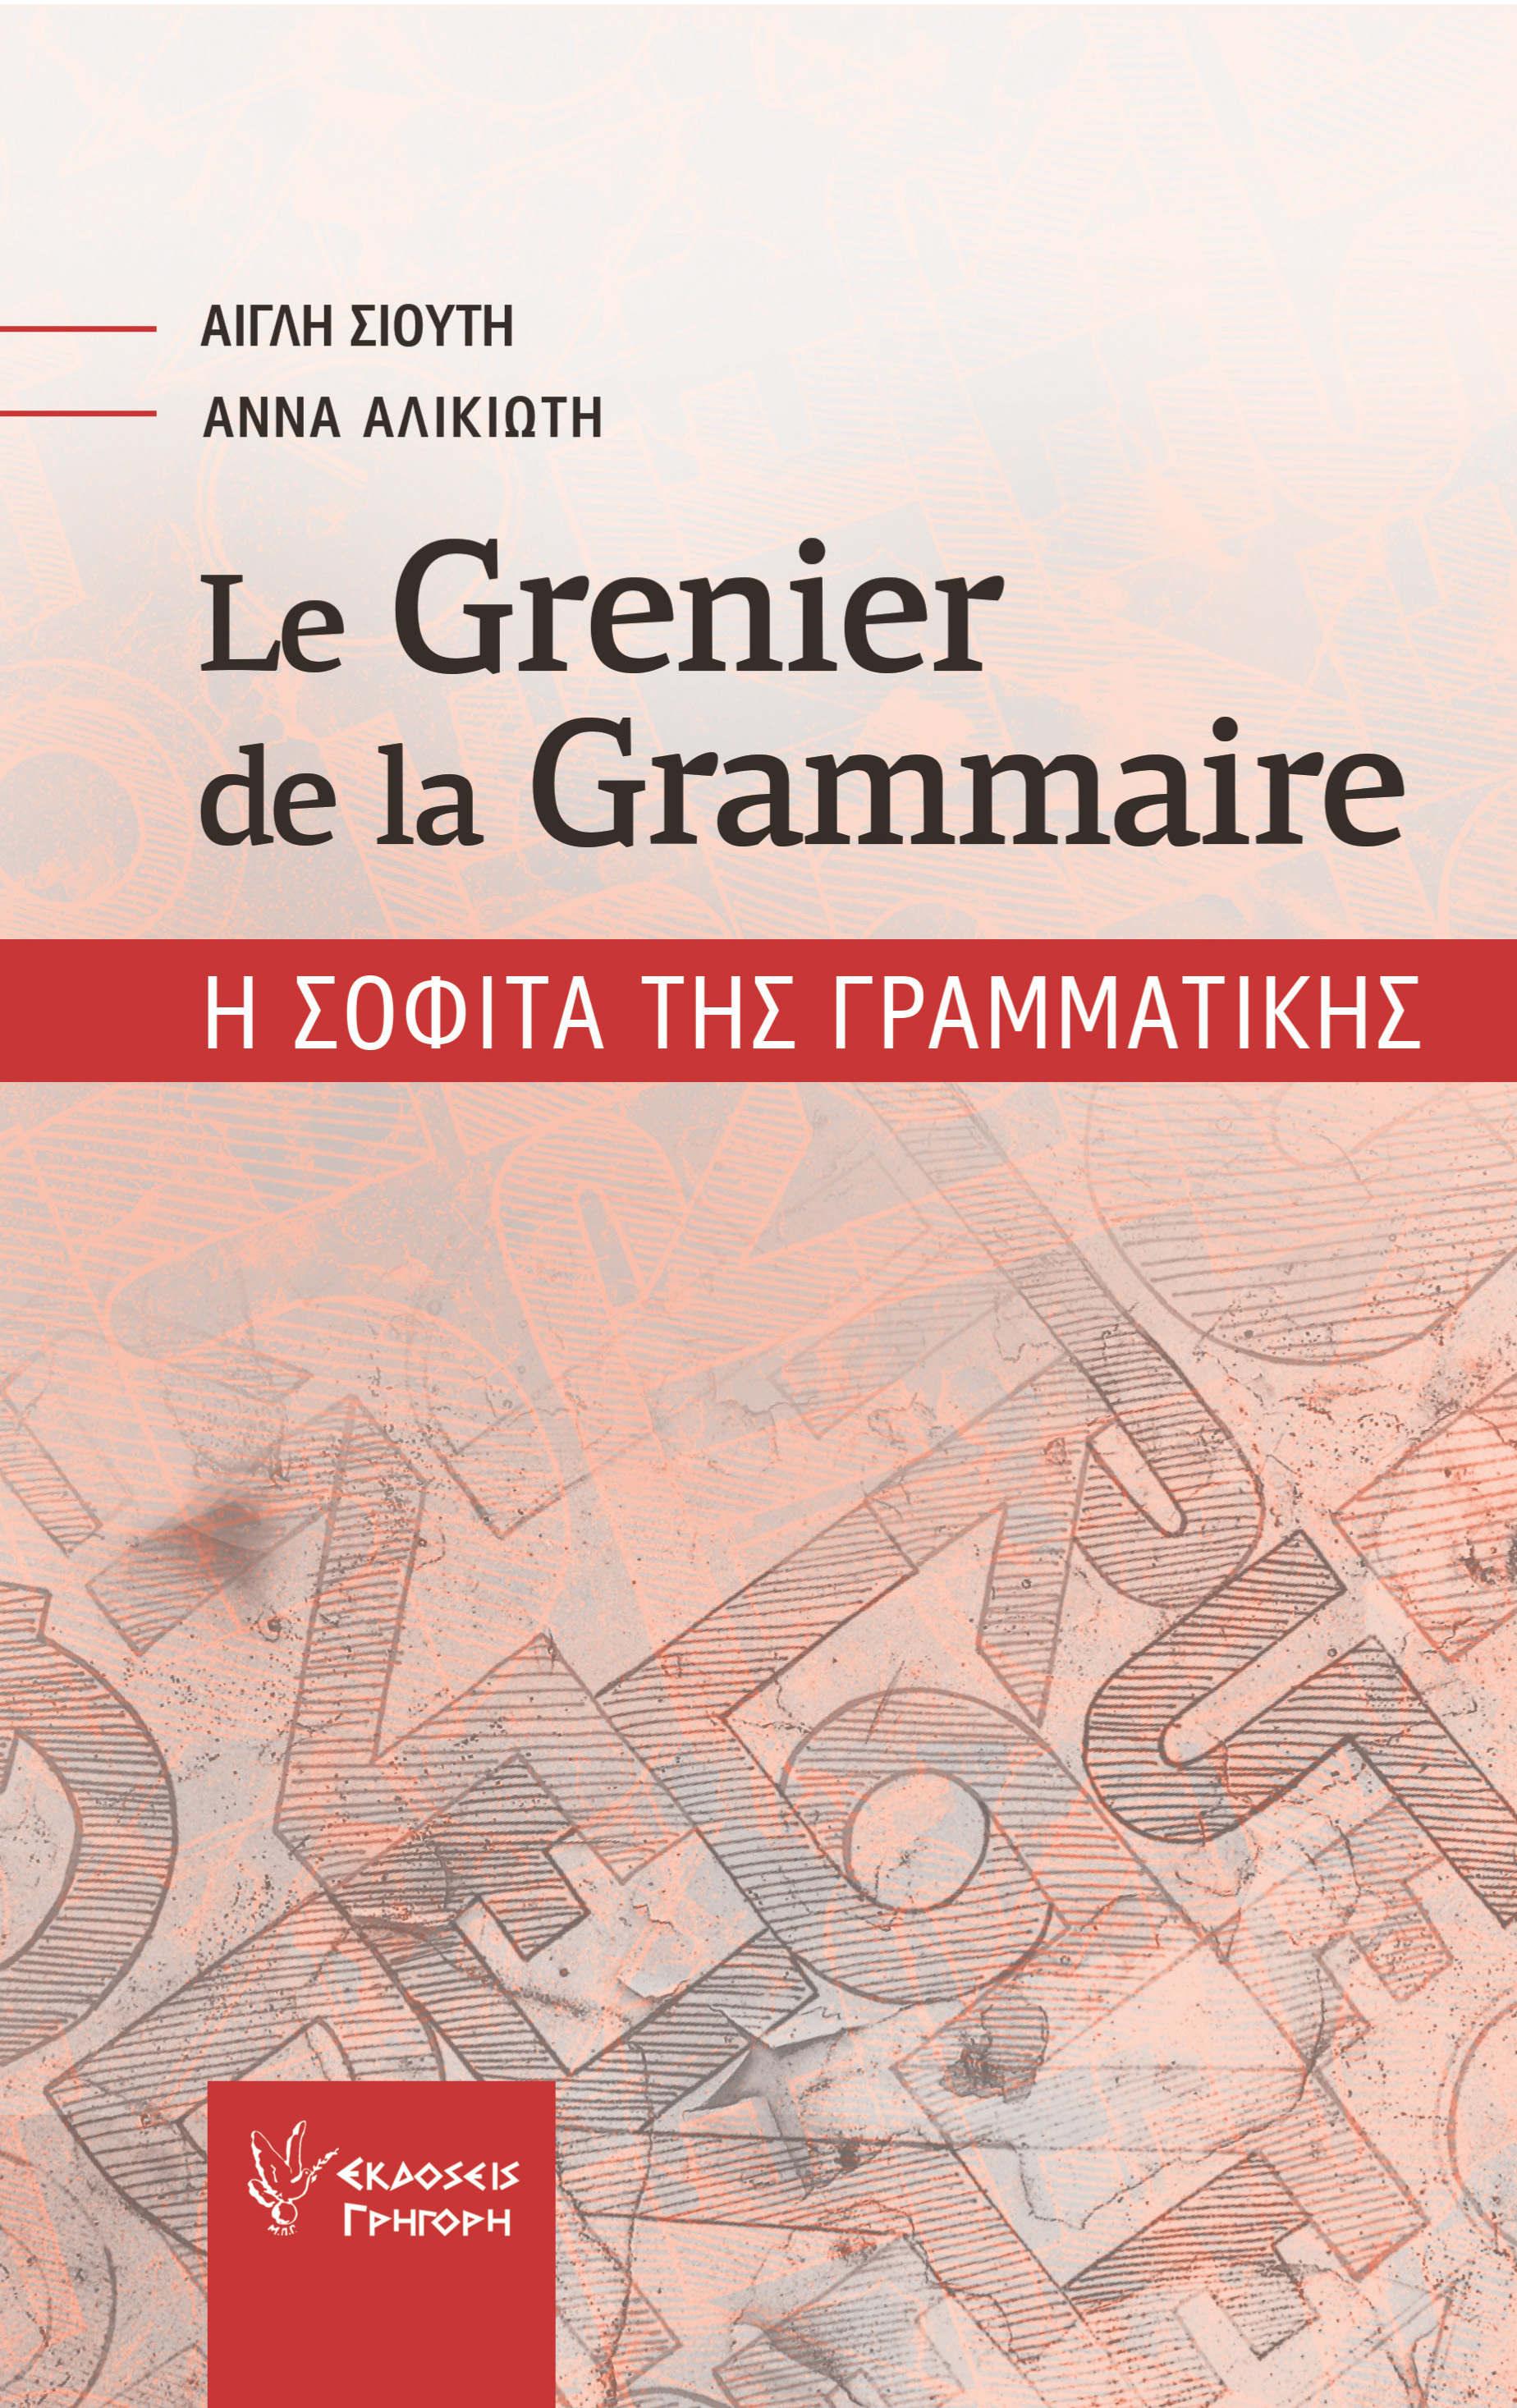 Le Grenier de la Grammaire